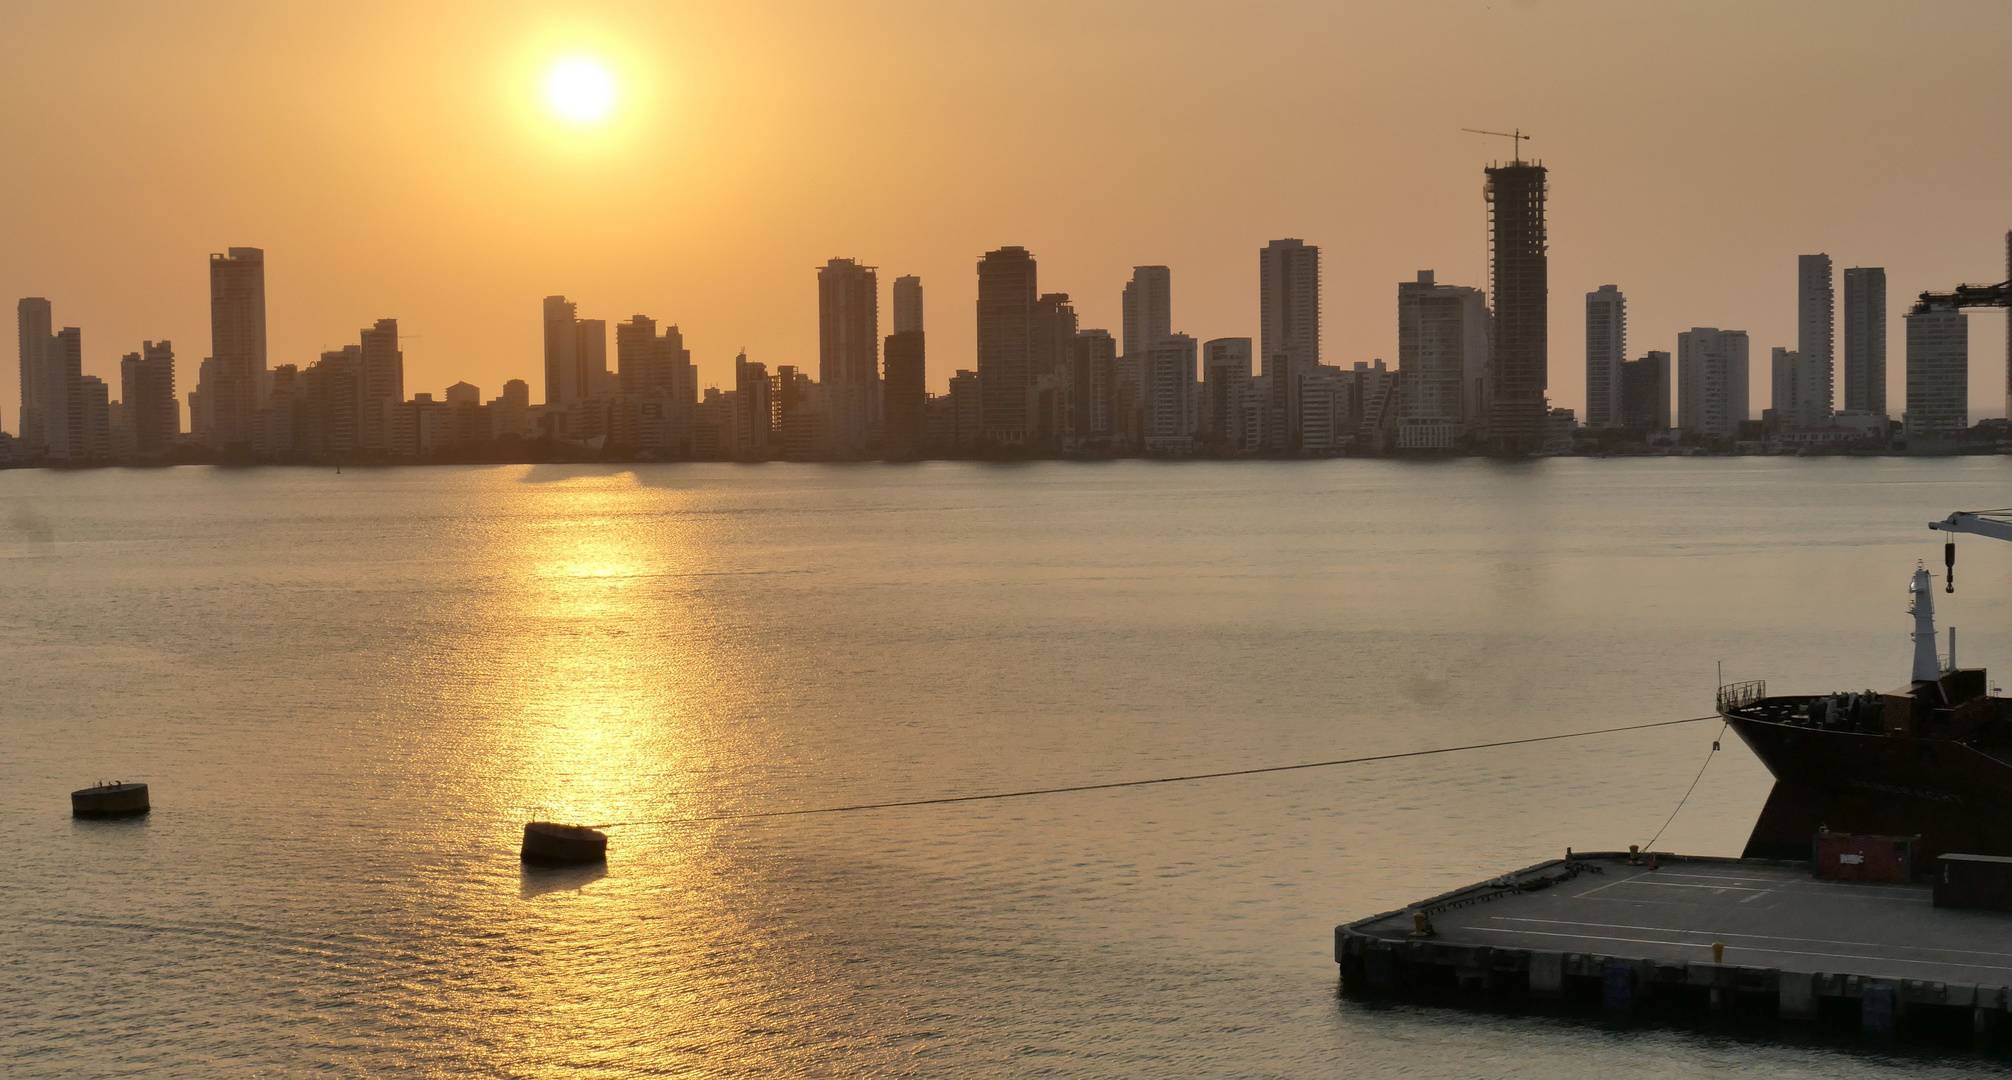 Kreuzfahrt_Kolumbien-Cartagena-Sonnenuntergang vom Schiff aus gesehen